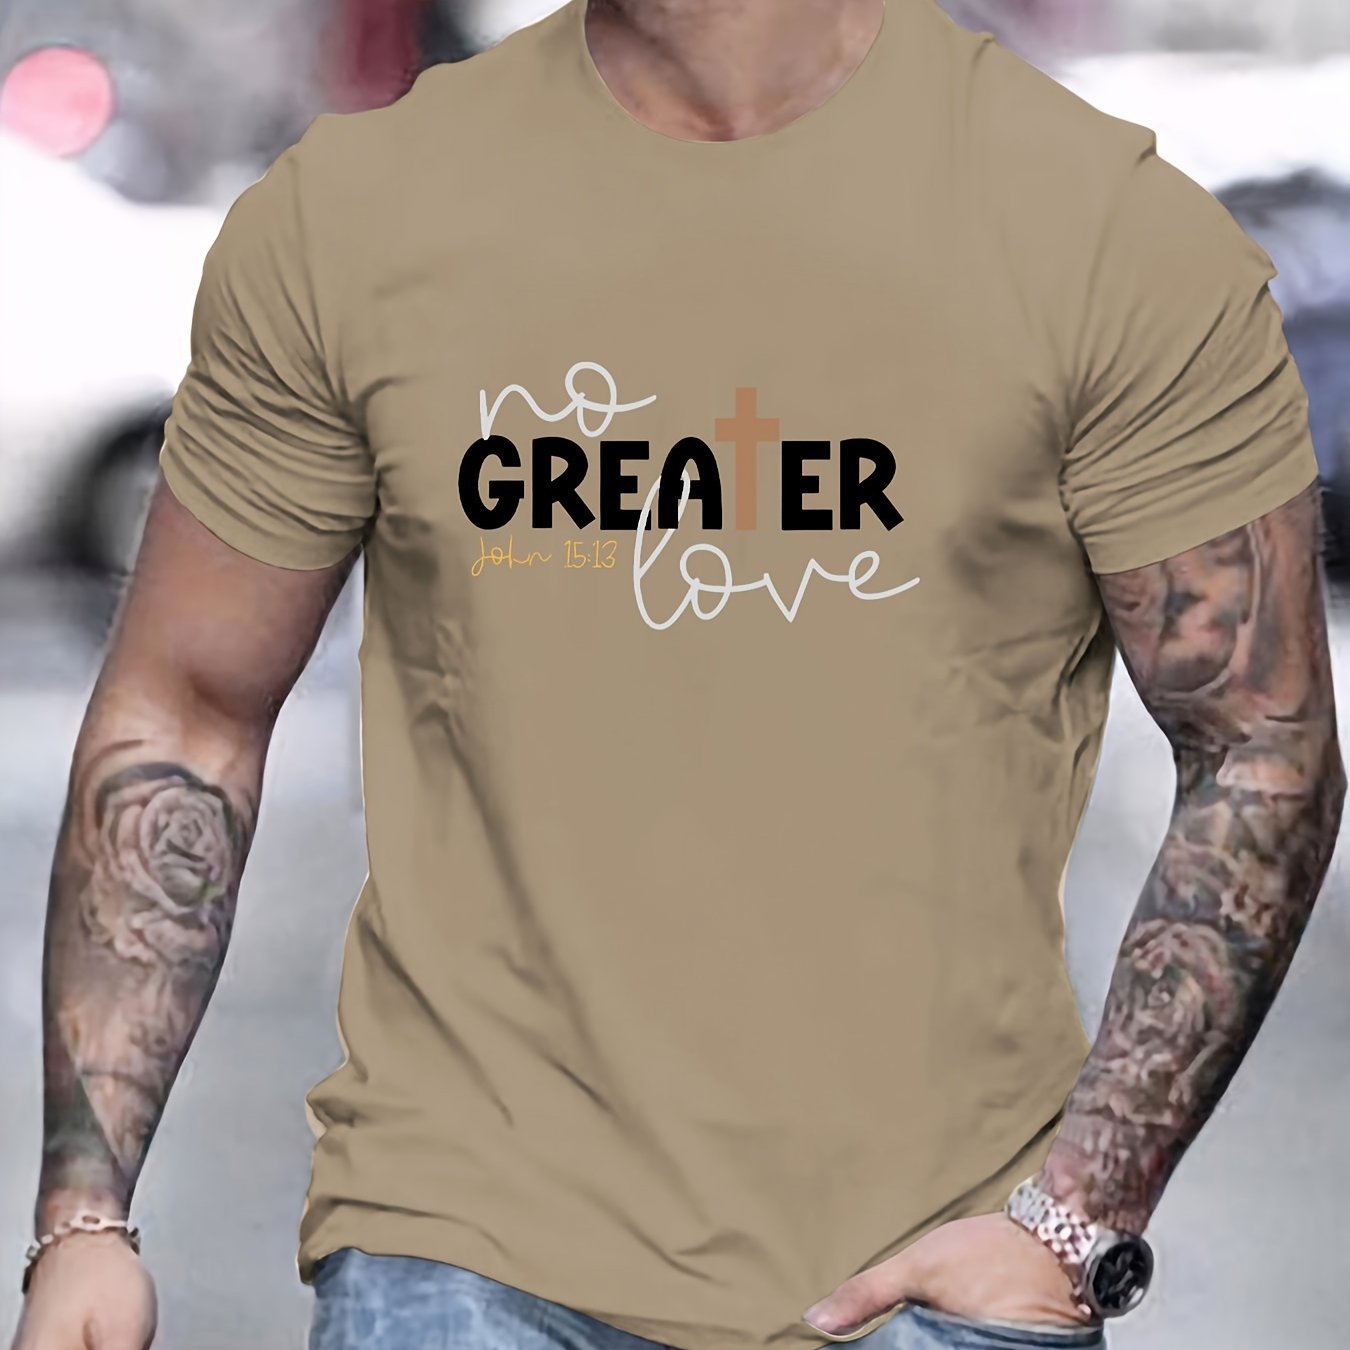 John 15:13 NO GREATER LOVE Men's Christian T-shirt claimedbygoddesigns